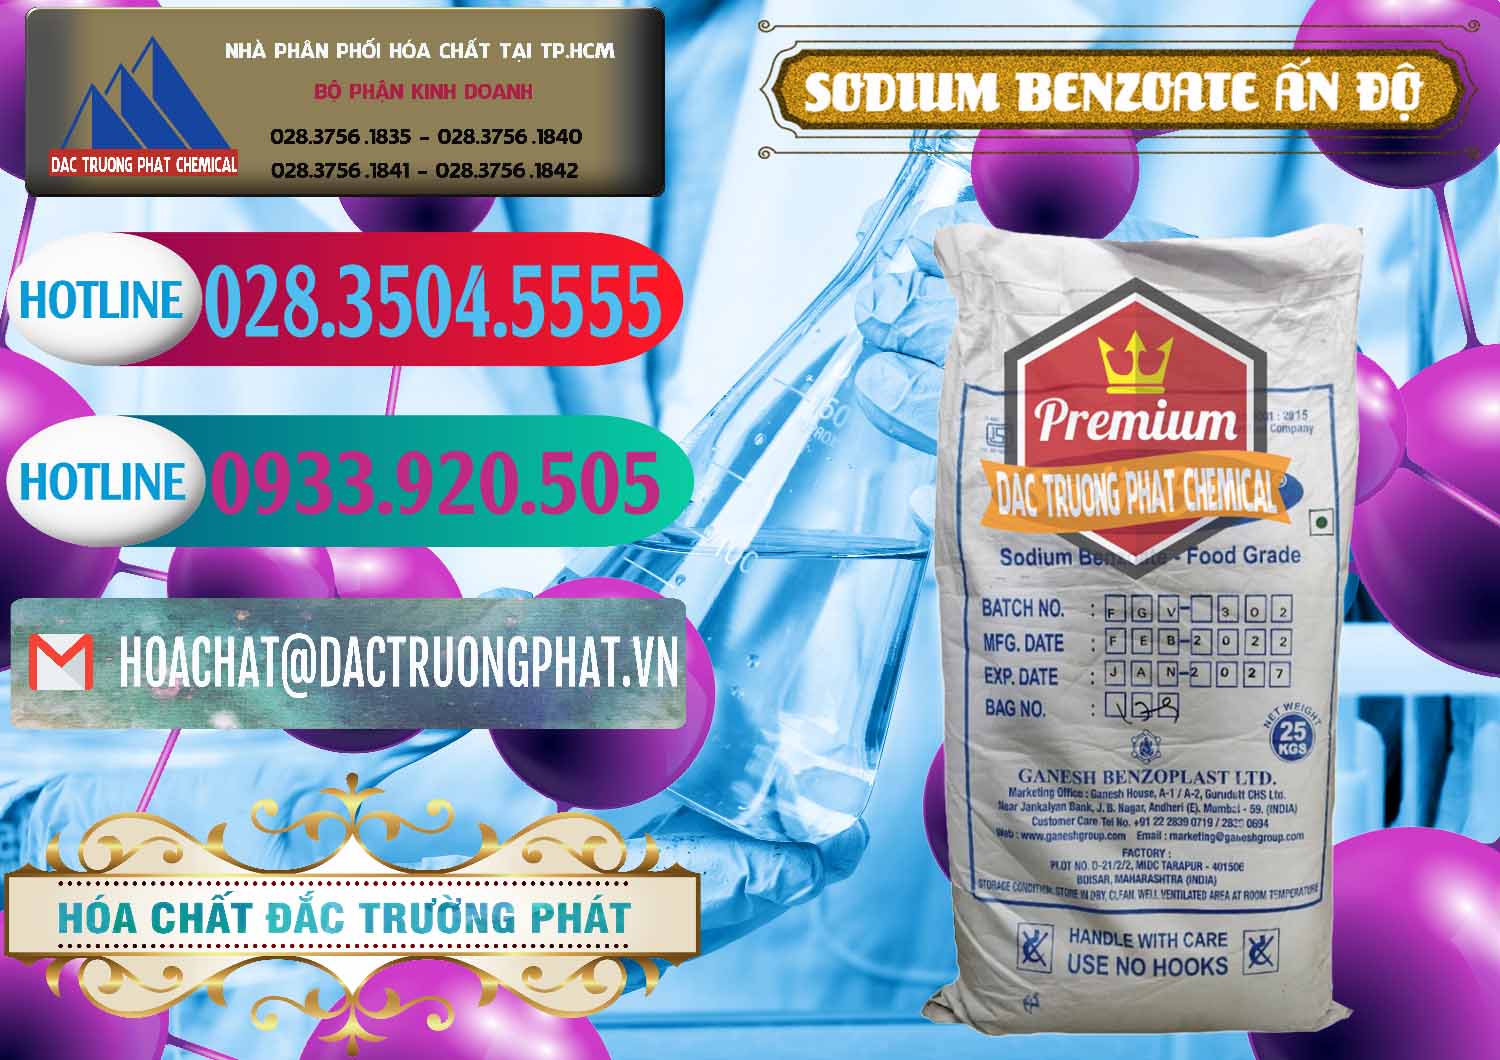 Nơi chuyên cung ứng & bán Sodium Benzoate - Mốc Bột Ấn Độ India - 0361 - Nhà cung cấp _ kinh doanh hóa chất tại TP.HCM - truongphat.vn